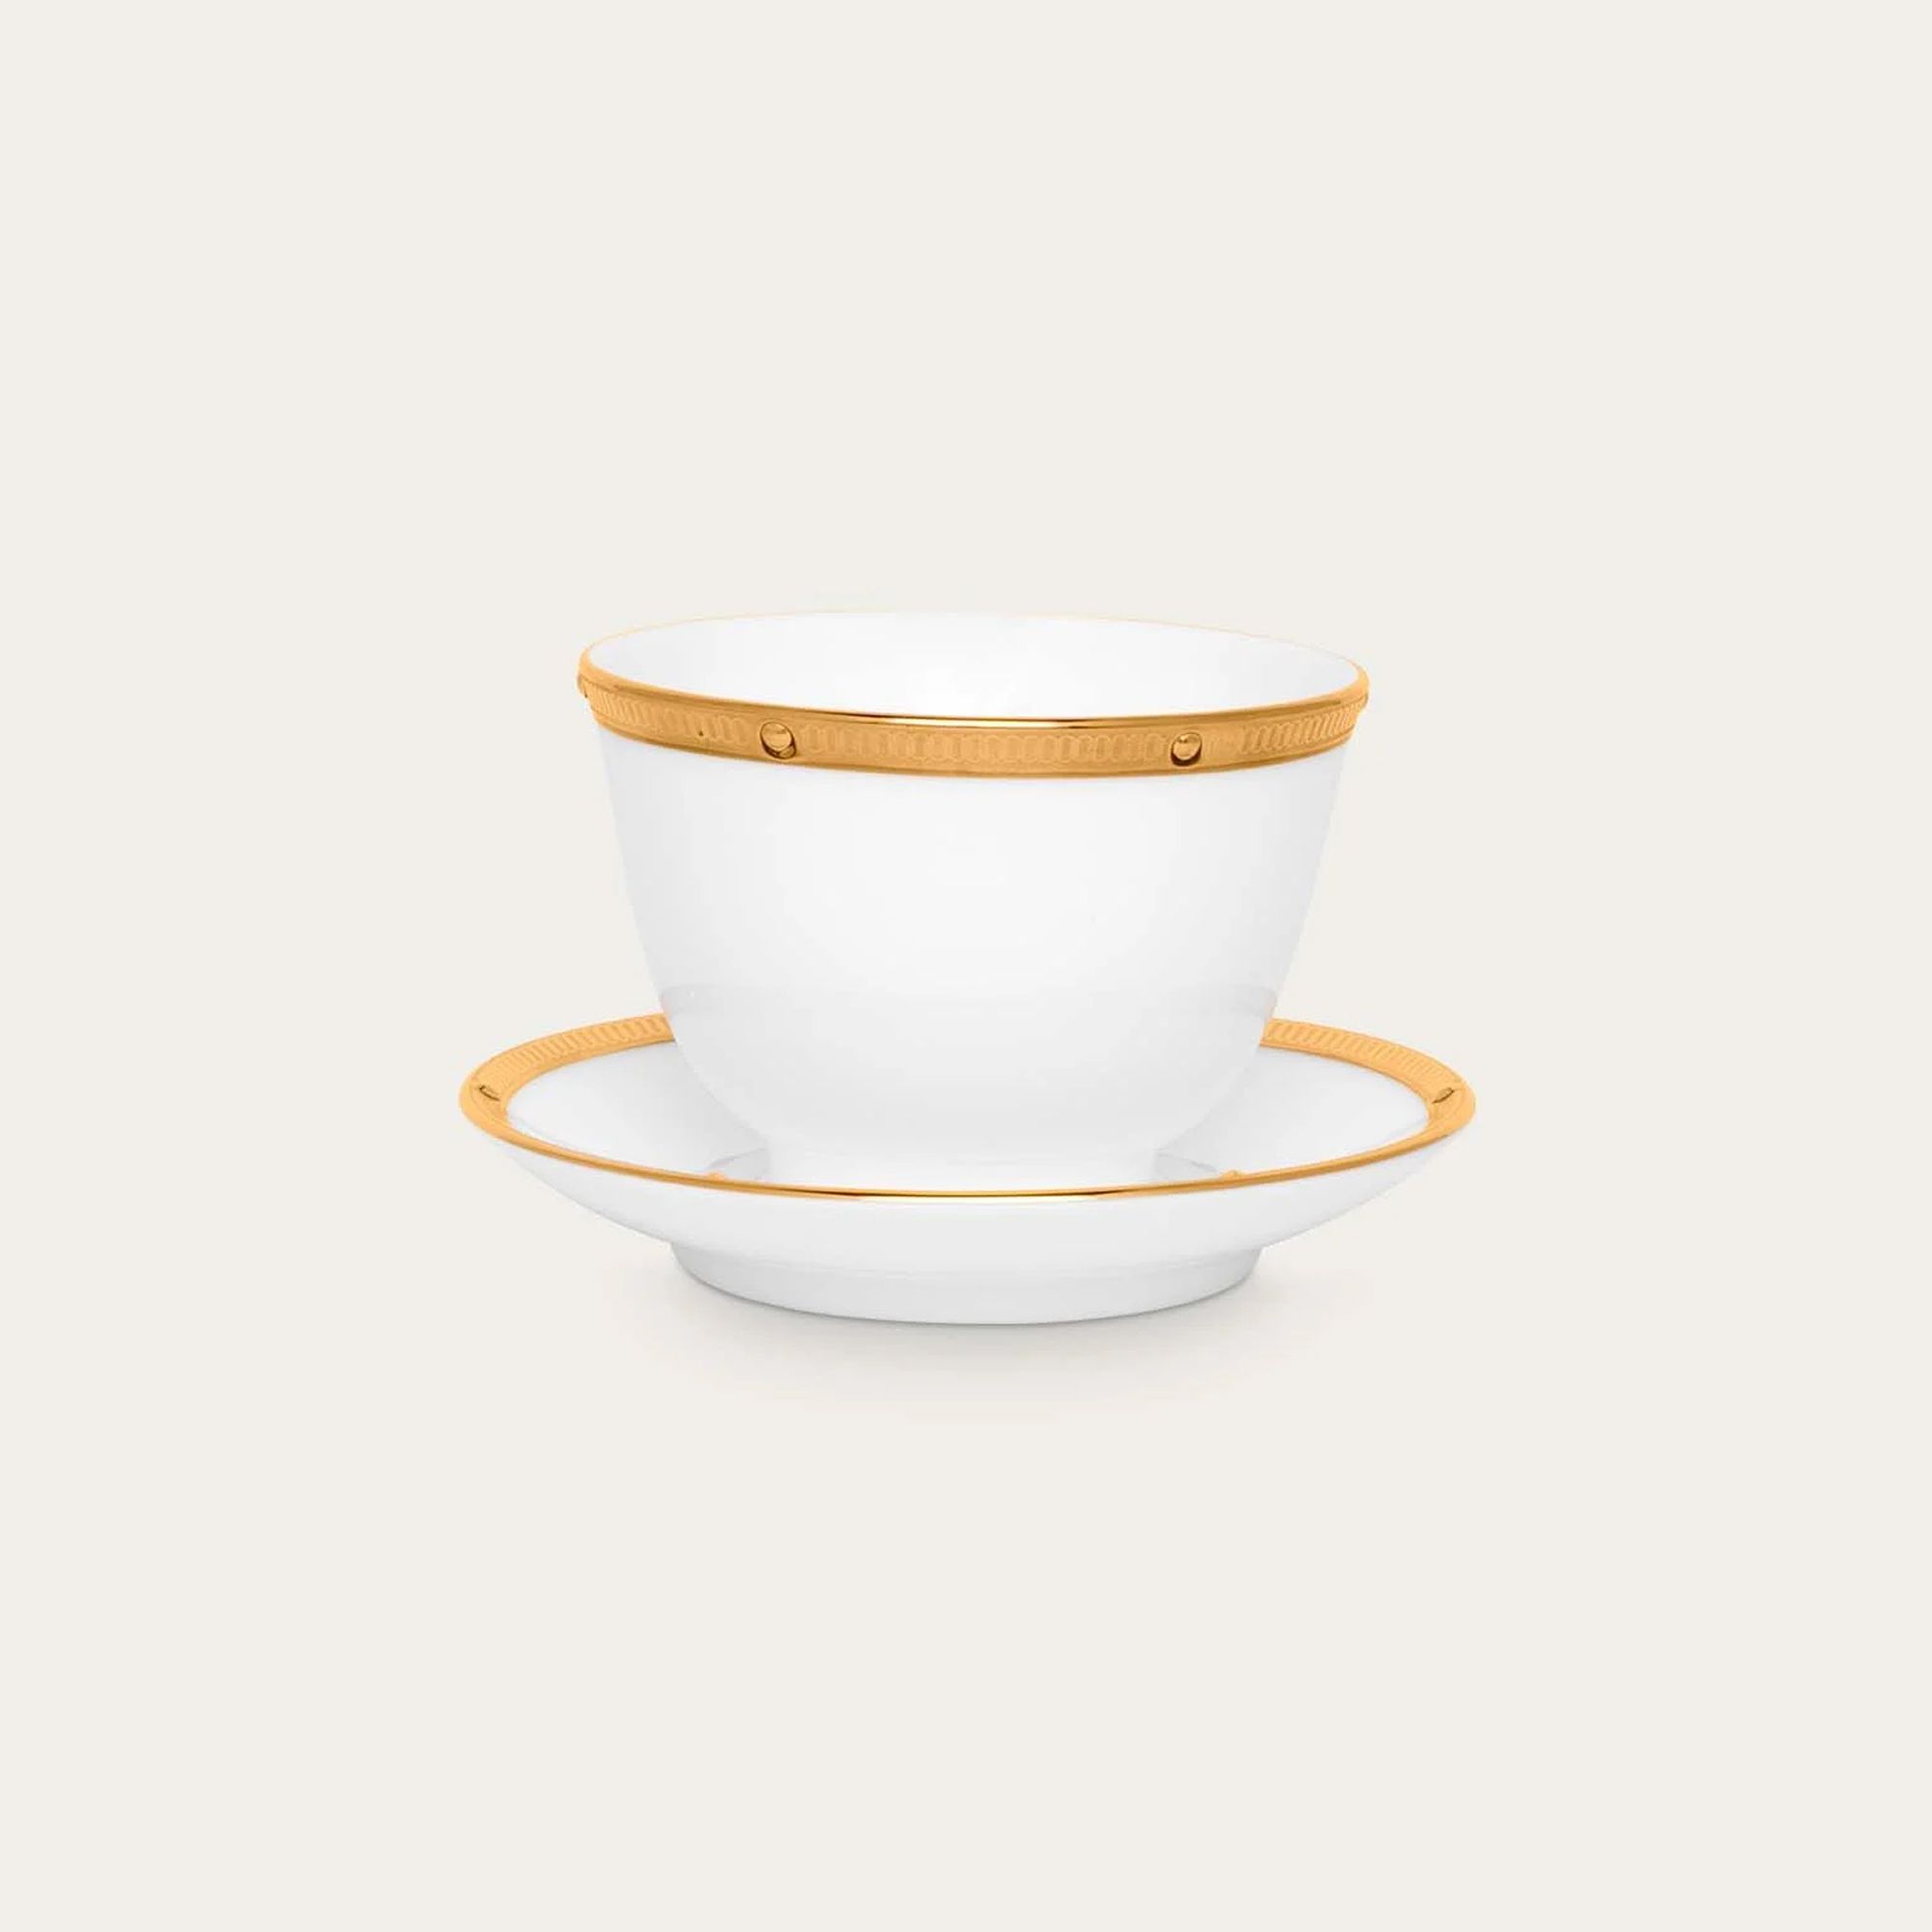  Chén trà (tách trà) Châu Á (không quai cầm) 145ml kèm đĩa lót | Rochelle Gold 4796L-T973634 